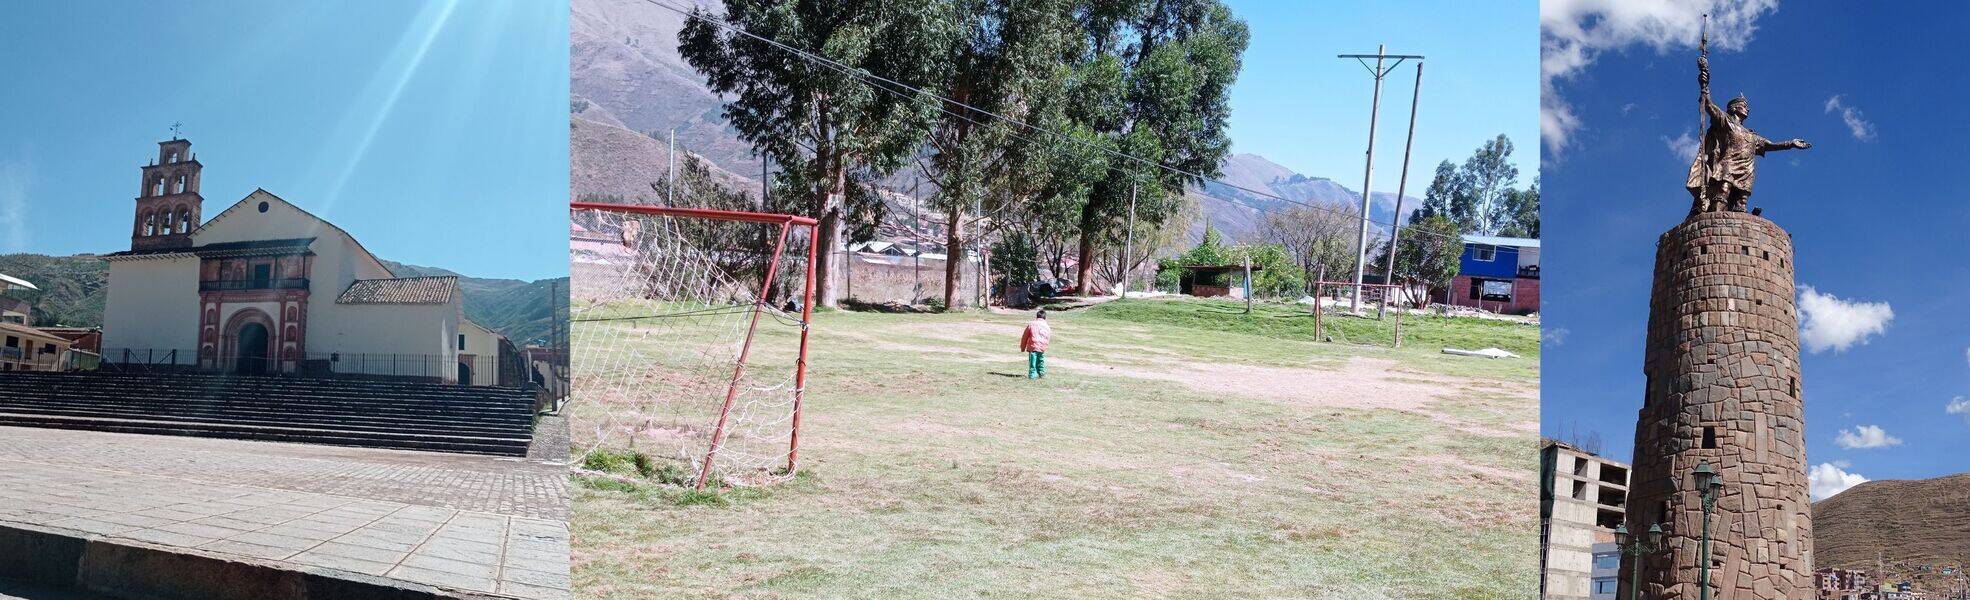 Erfahrungsbericht aus dem Children Center in Cusco